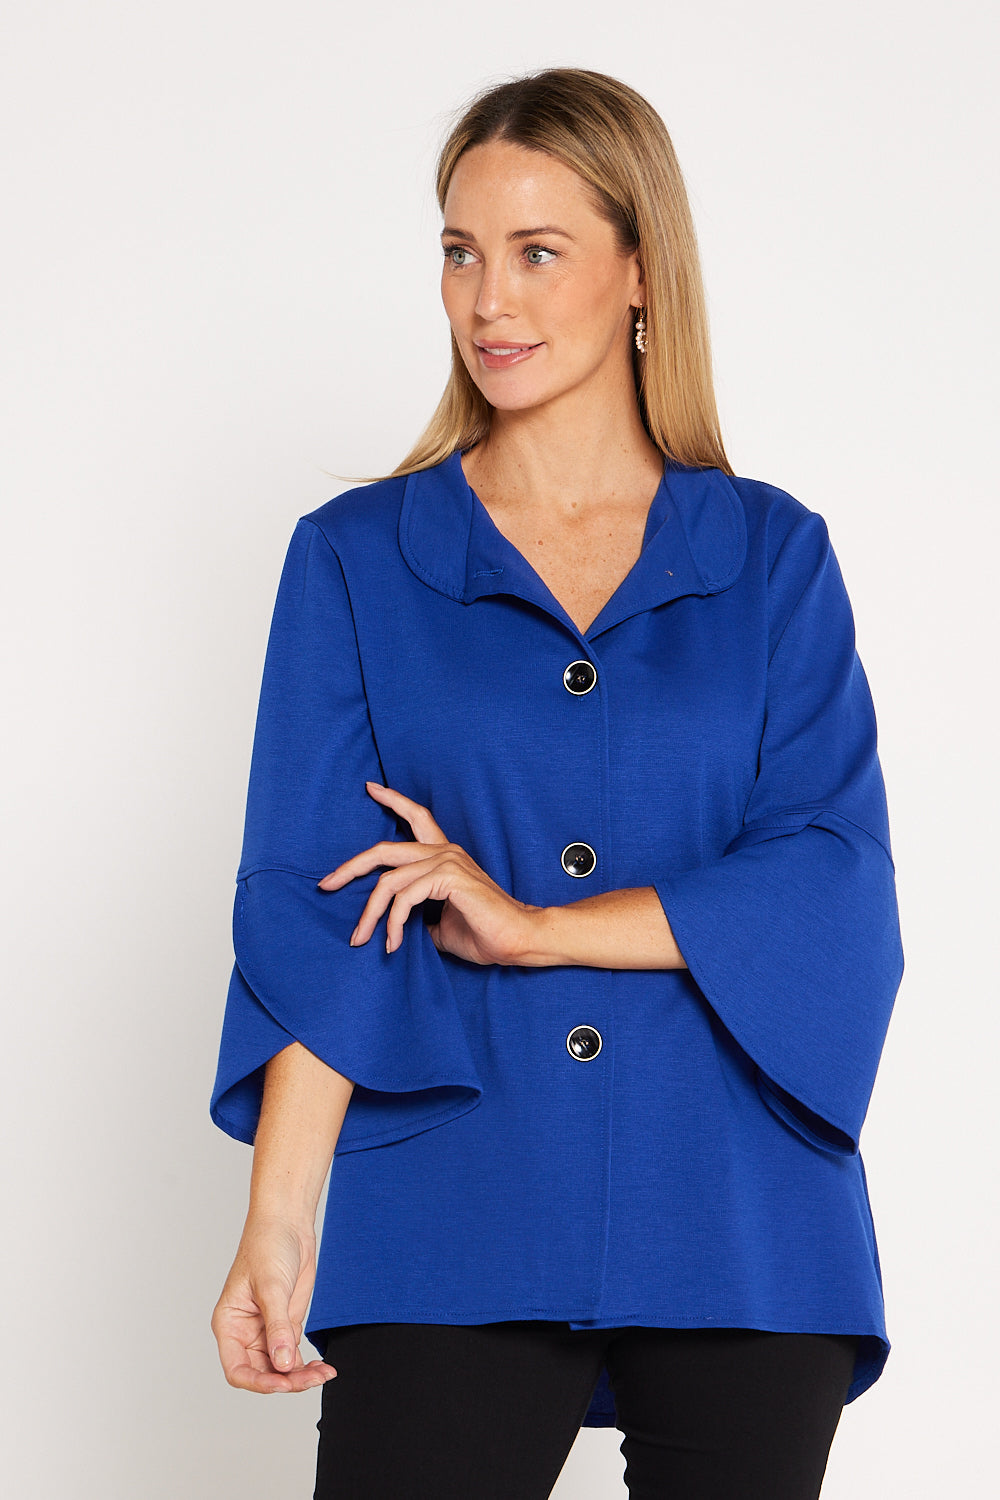 Jocelyn Tulip Sleeve Jacket - Royal Blue | Mature Women's Winter Style ...